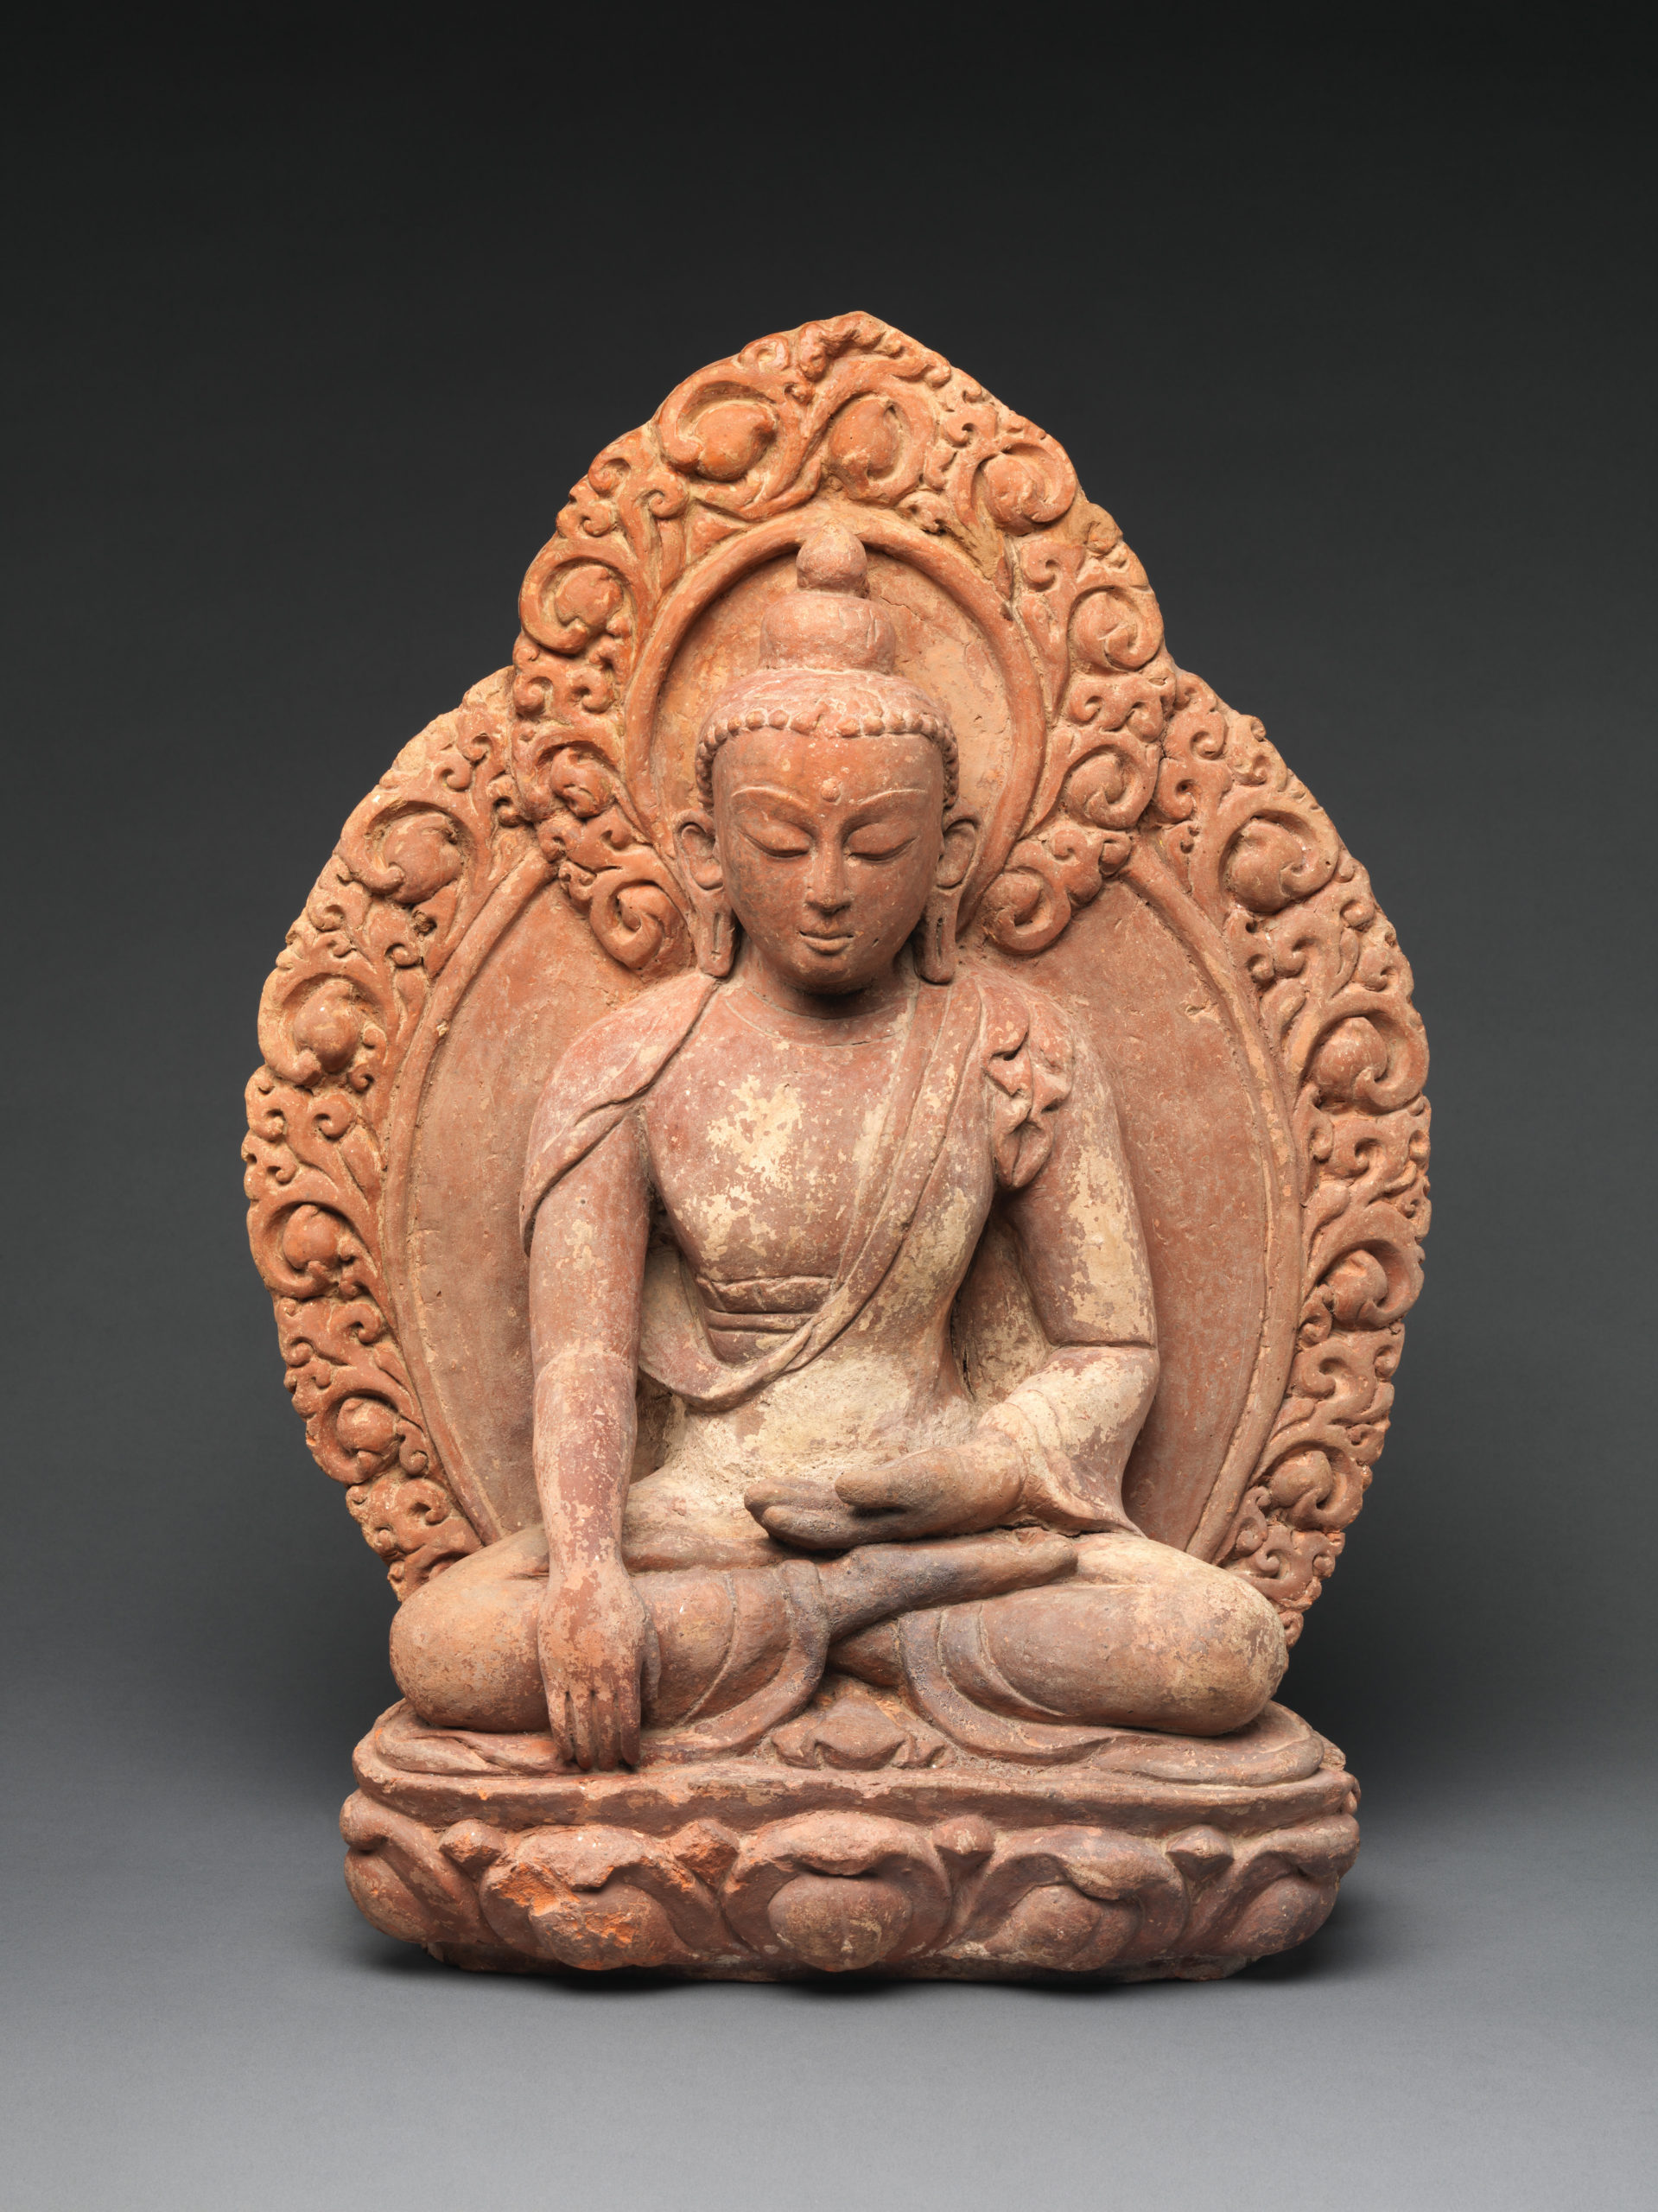 The Buddha Statue in Abhaya Mudra Hand Pose, Symbolizing Safety Stock Image  - Image of dagoba, cityscape: 115161345